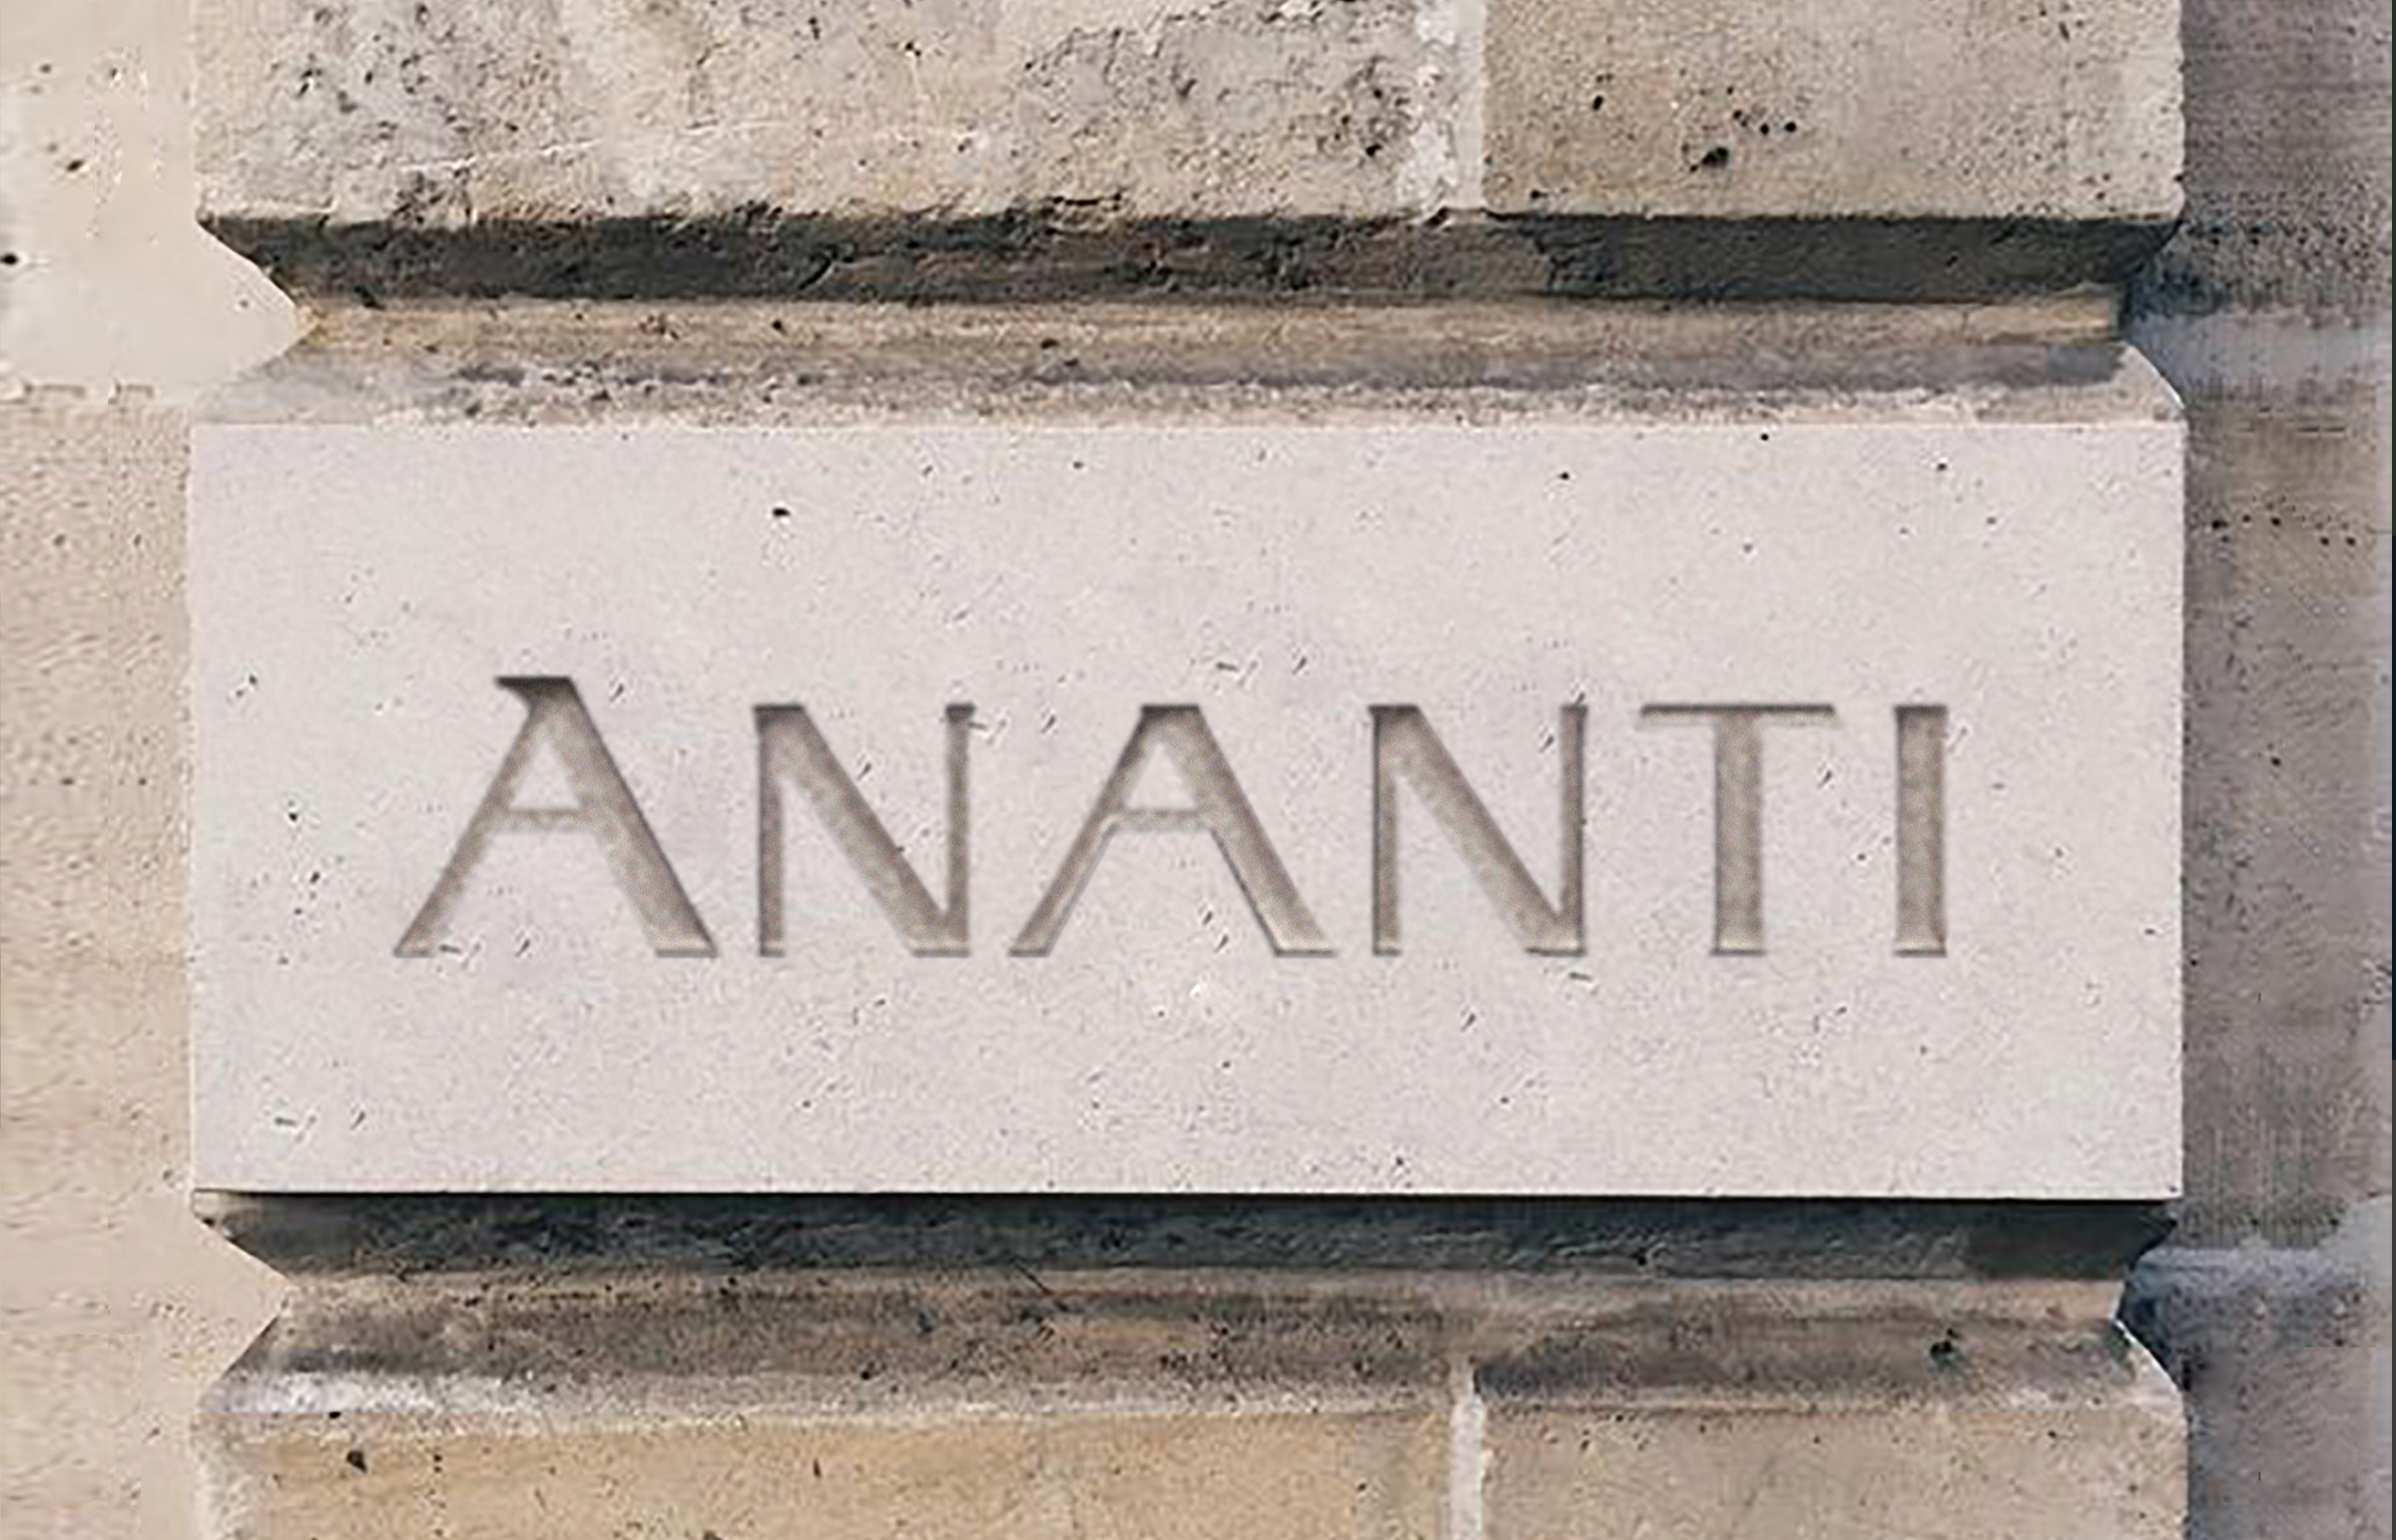 ananti logotype design